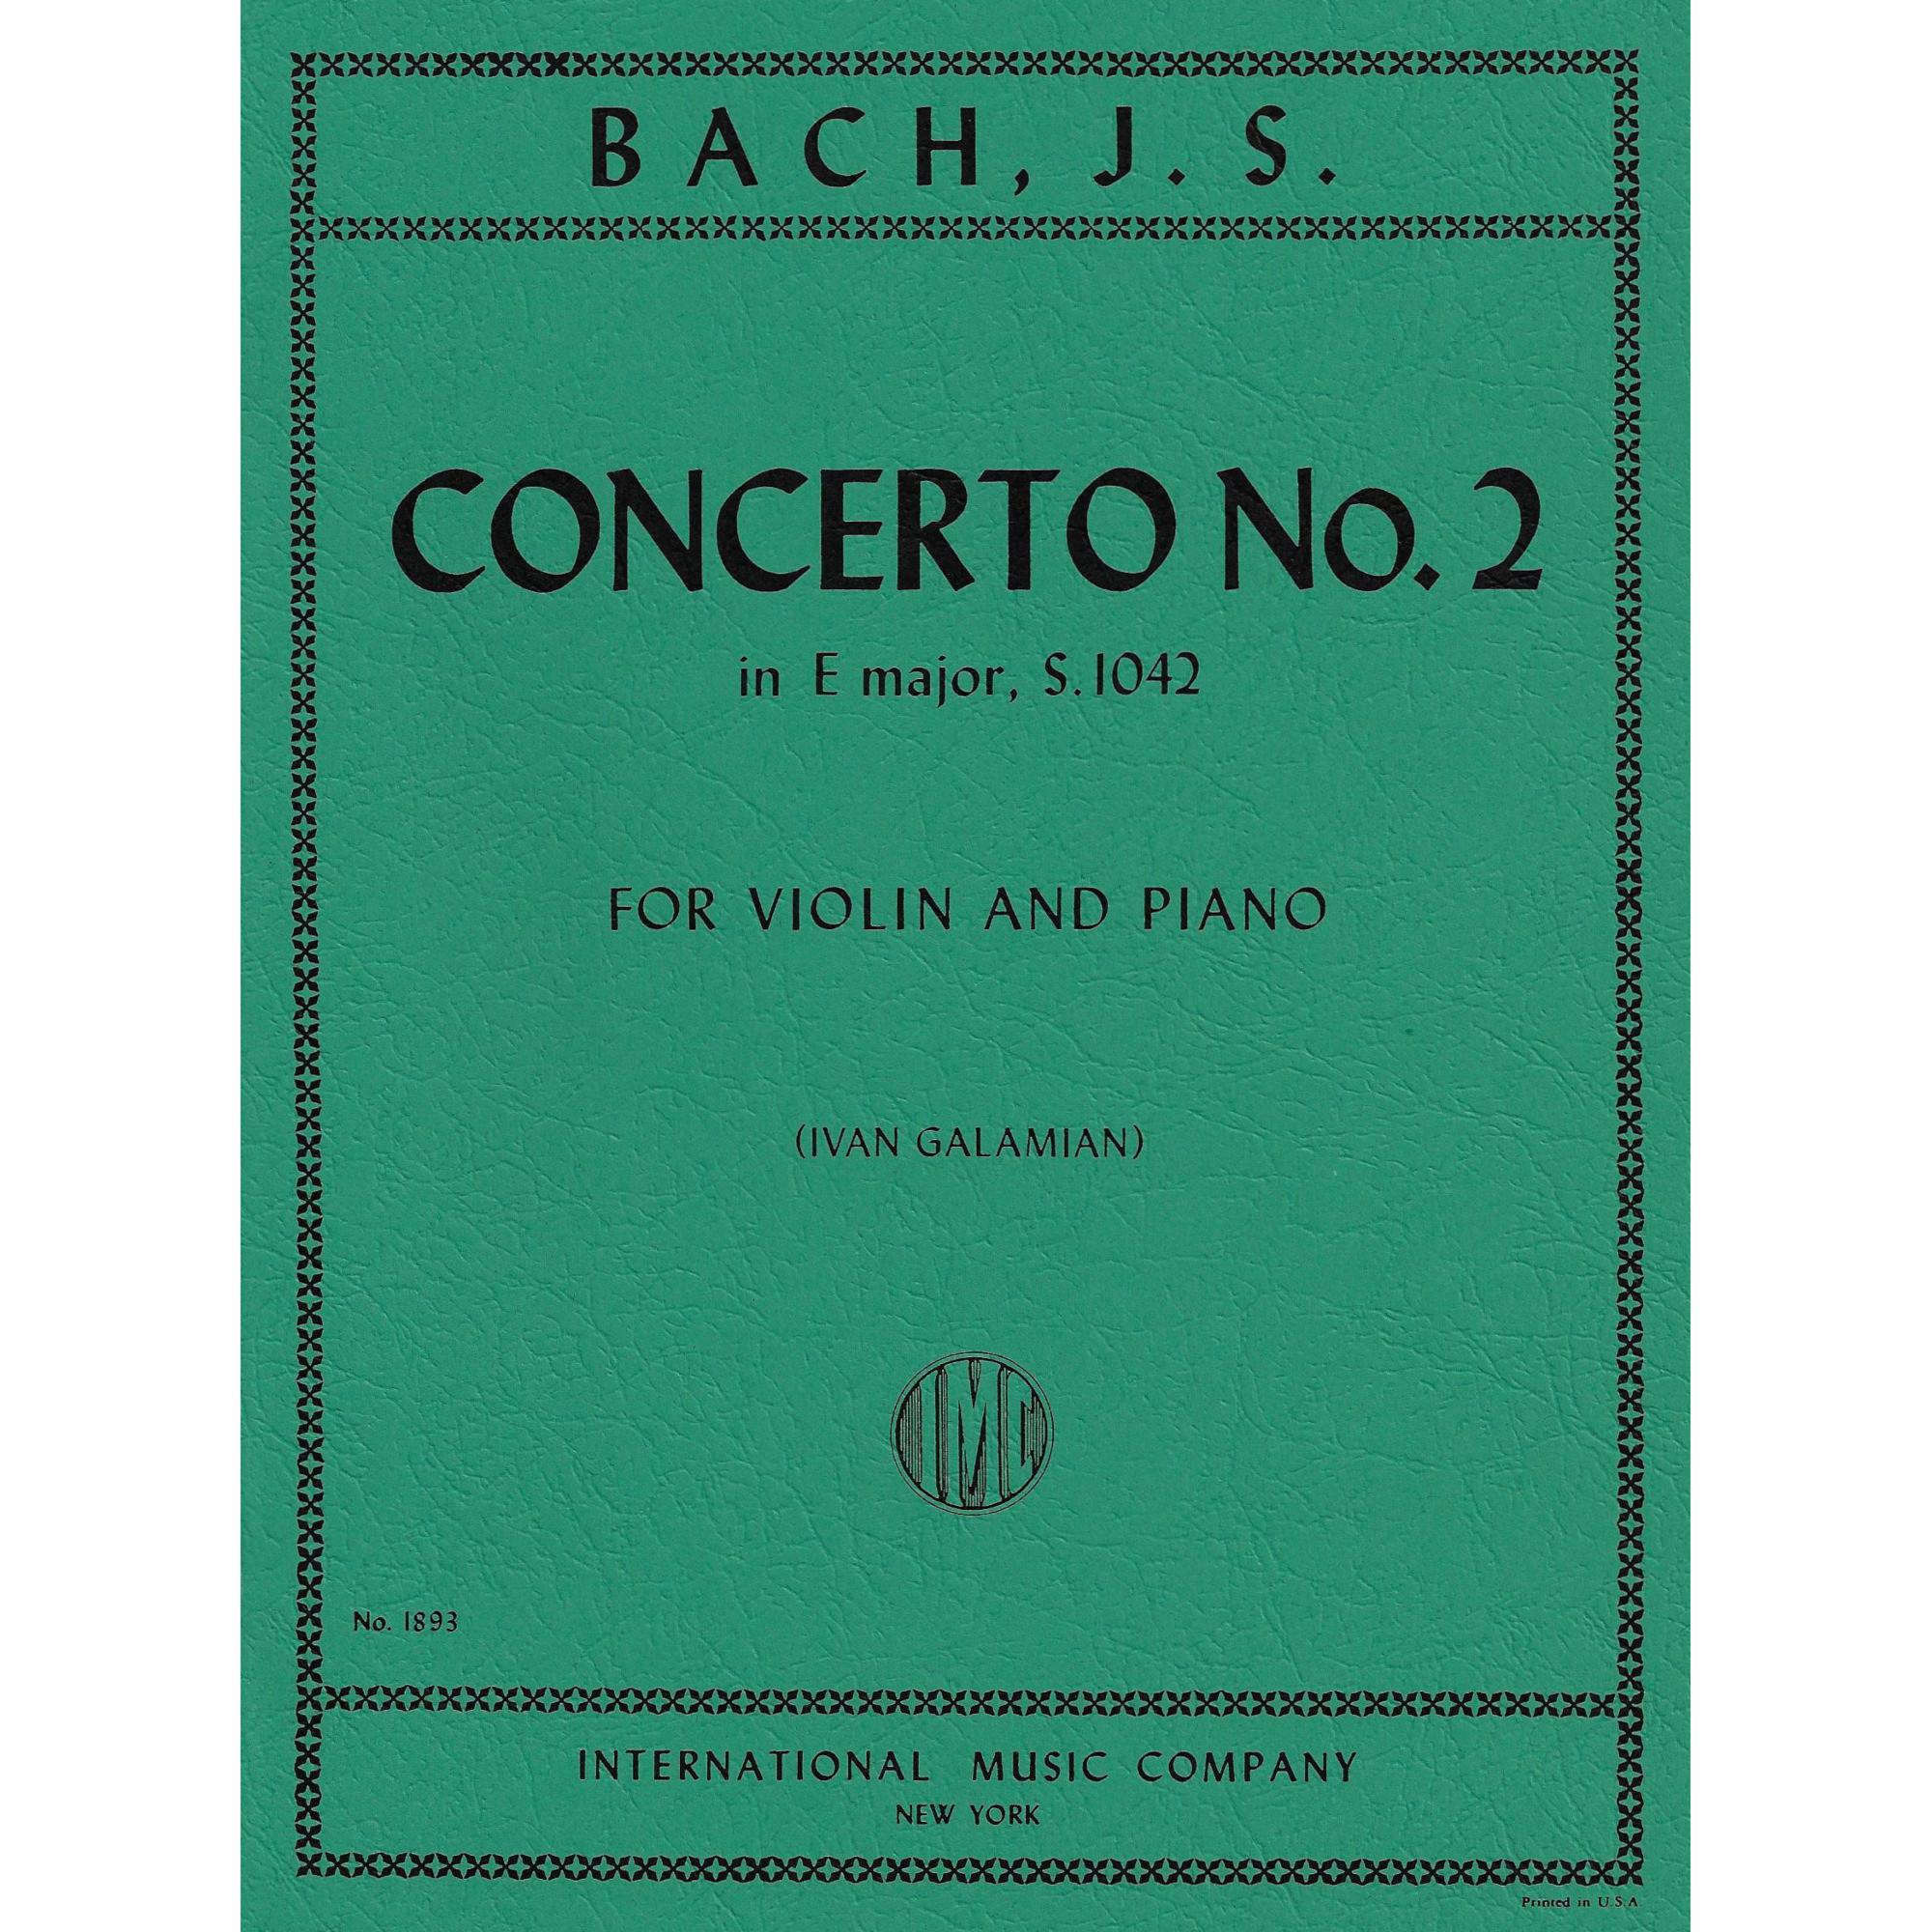 Bach -- Concerto No. 2 in E Major, S. 1042 for Violin and Piano